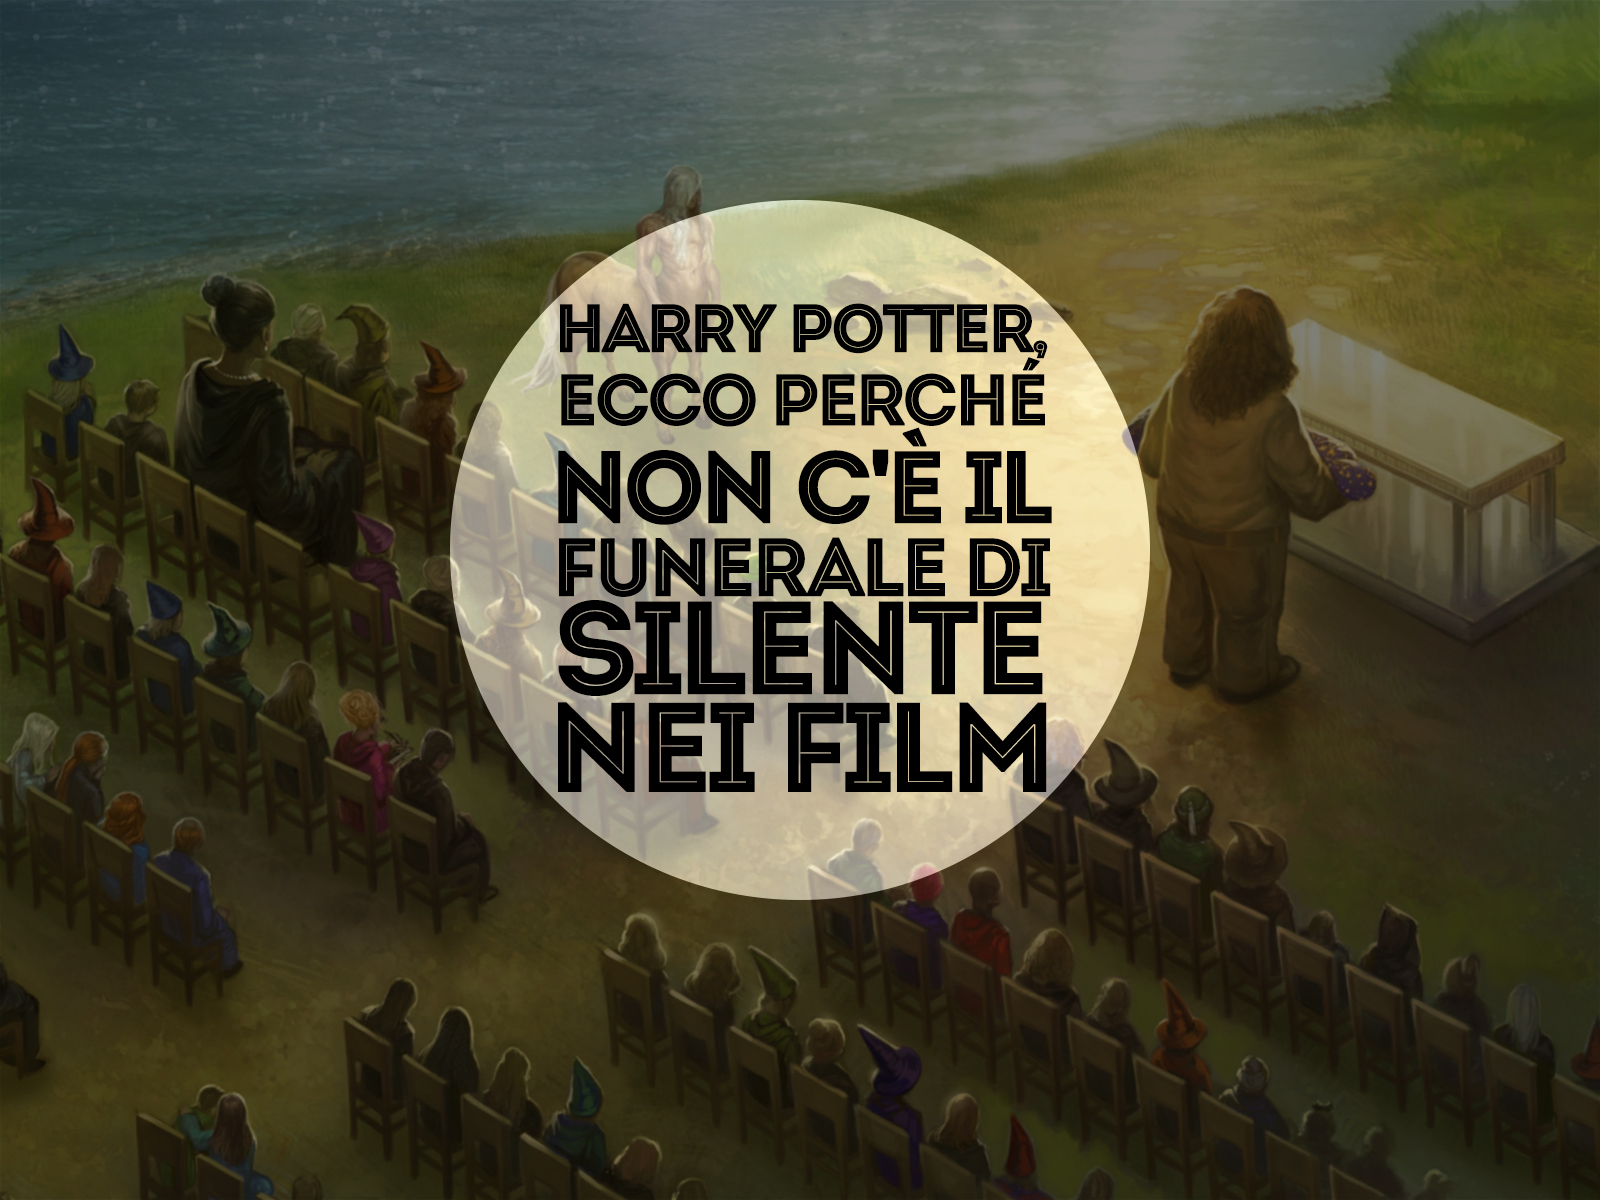 Harry Potter, ecco perché non c'è il funerale di Silente nei film